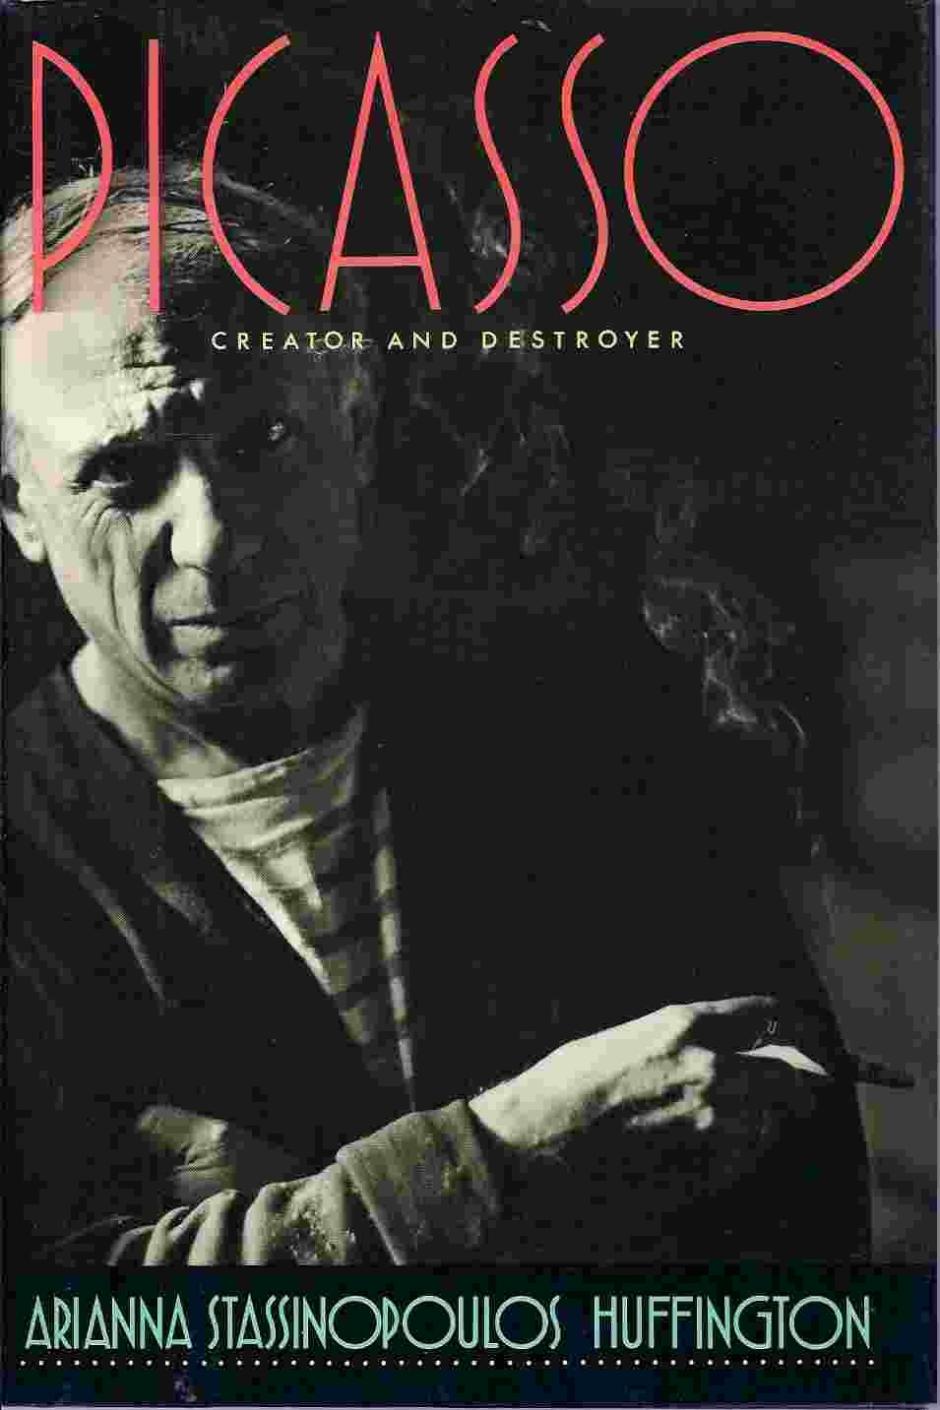 "Picasso: Creador y Destructor", de Arianna Stassinopoulos Huffington (Maeva)